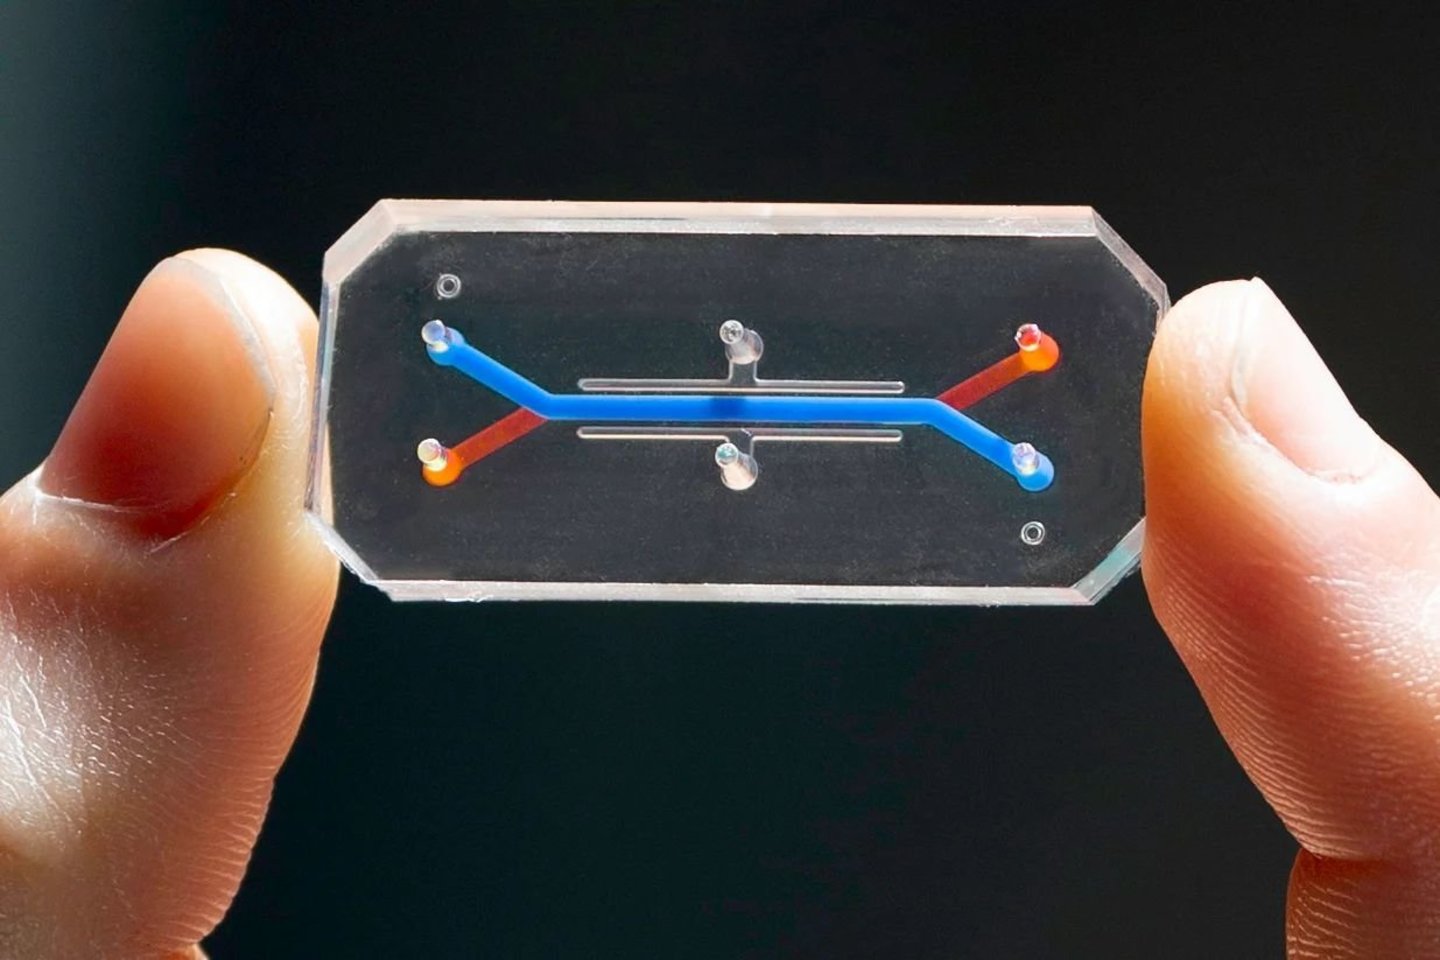  Organų lustai - tai mikrofluidiniai prietaisai su gyvomis žmogaus ląstelėmis, skirti vaistų kūrimui, ligų modeliavimui ir personalizuotai medicinai.<br> Wysso instituto nuotr.